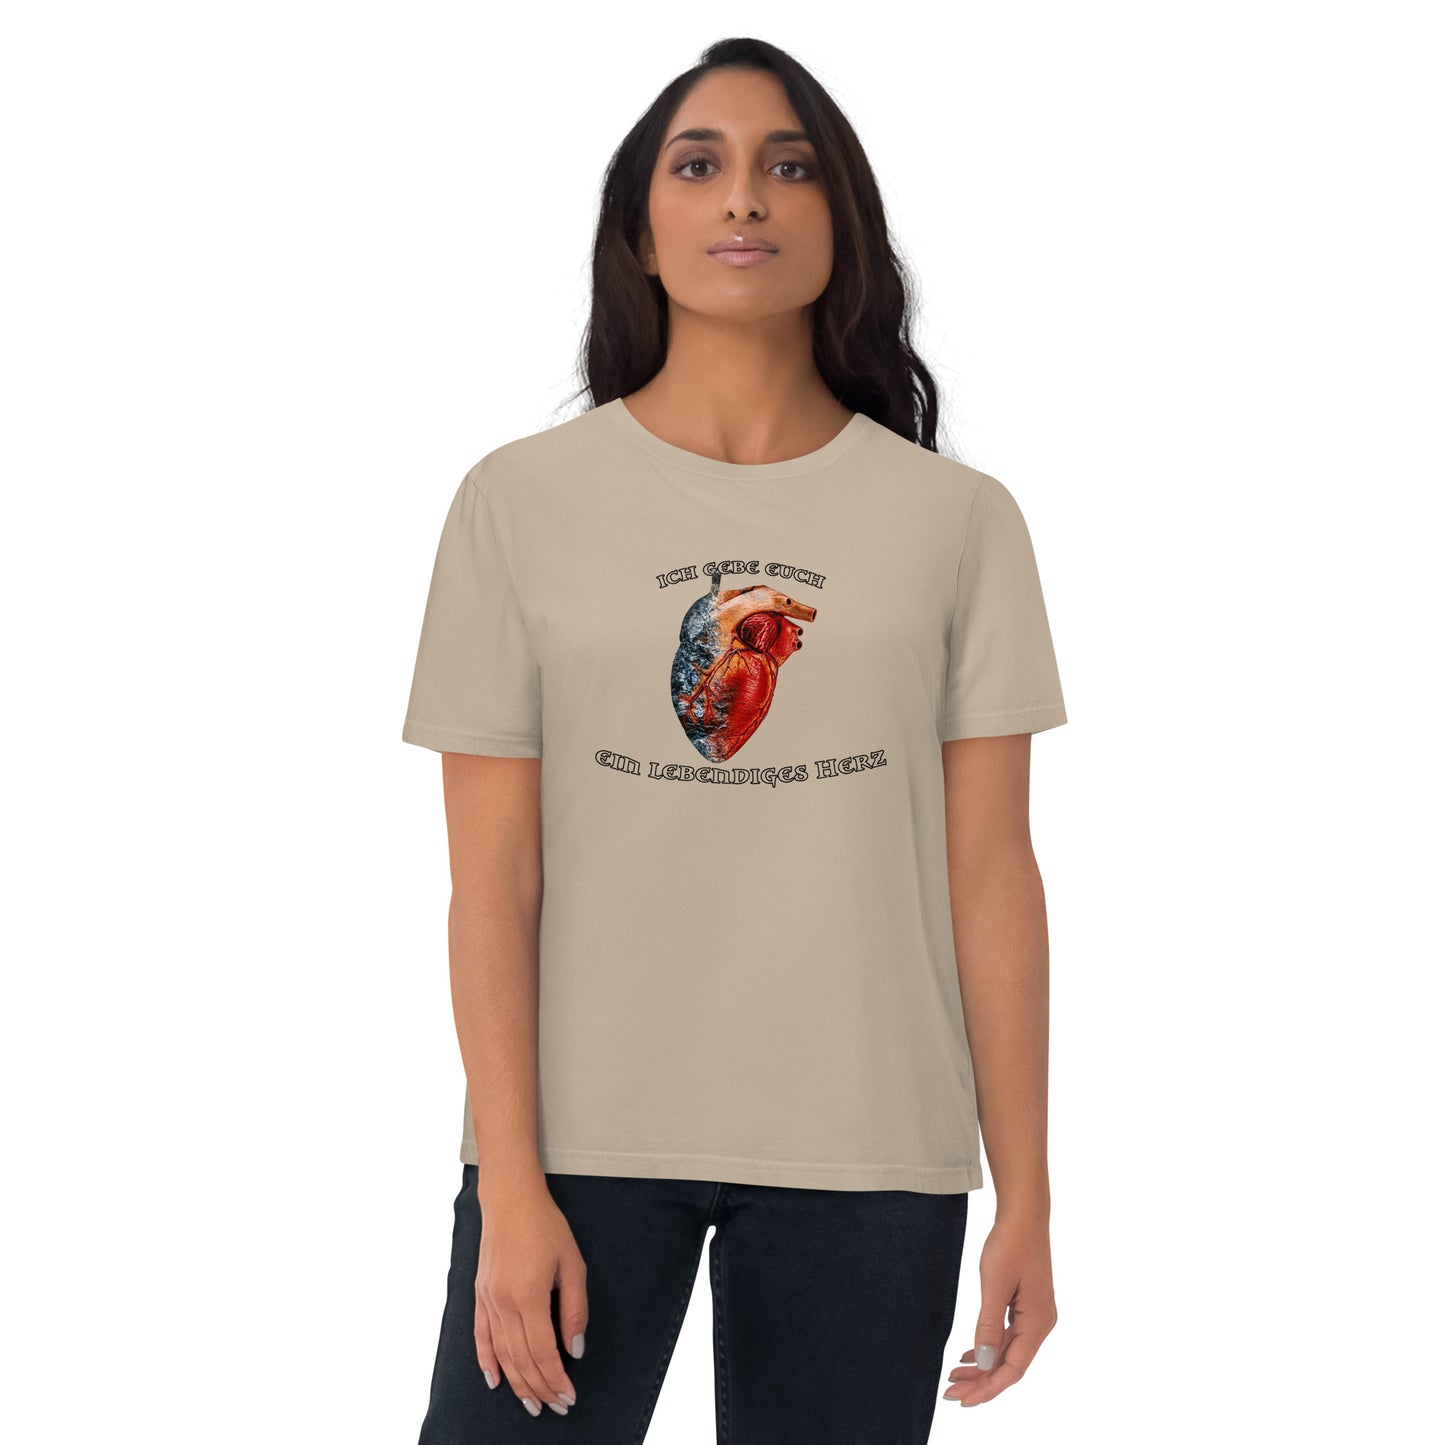 Ein lebendiges Herz - T-Shirt - Unisex